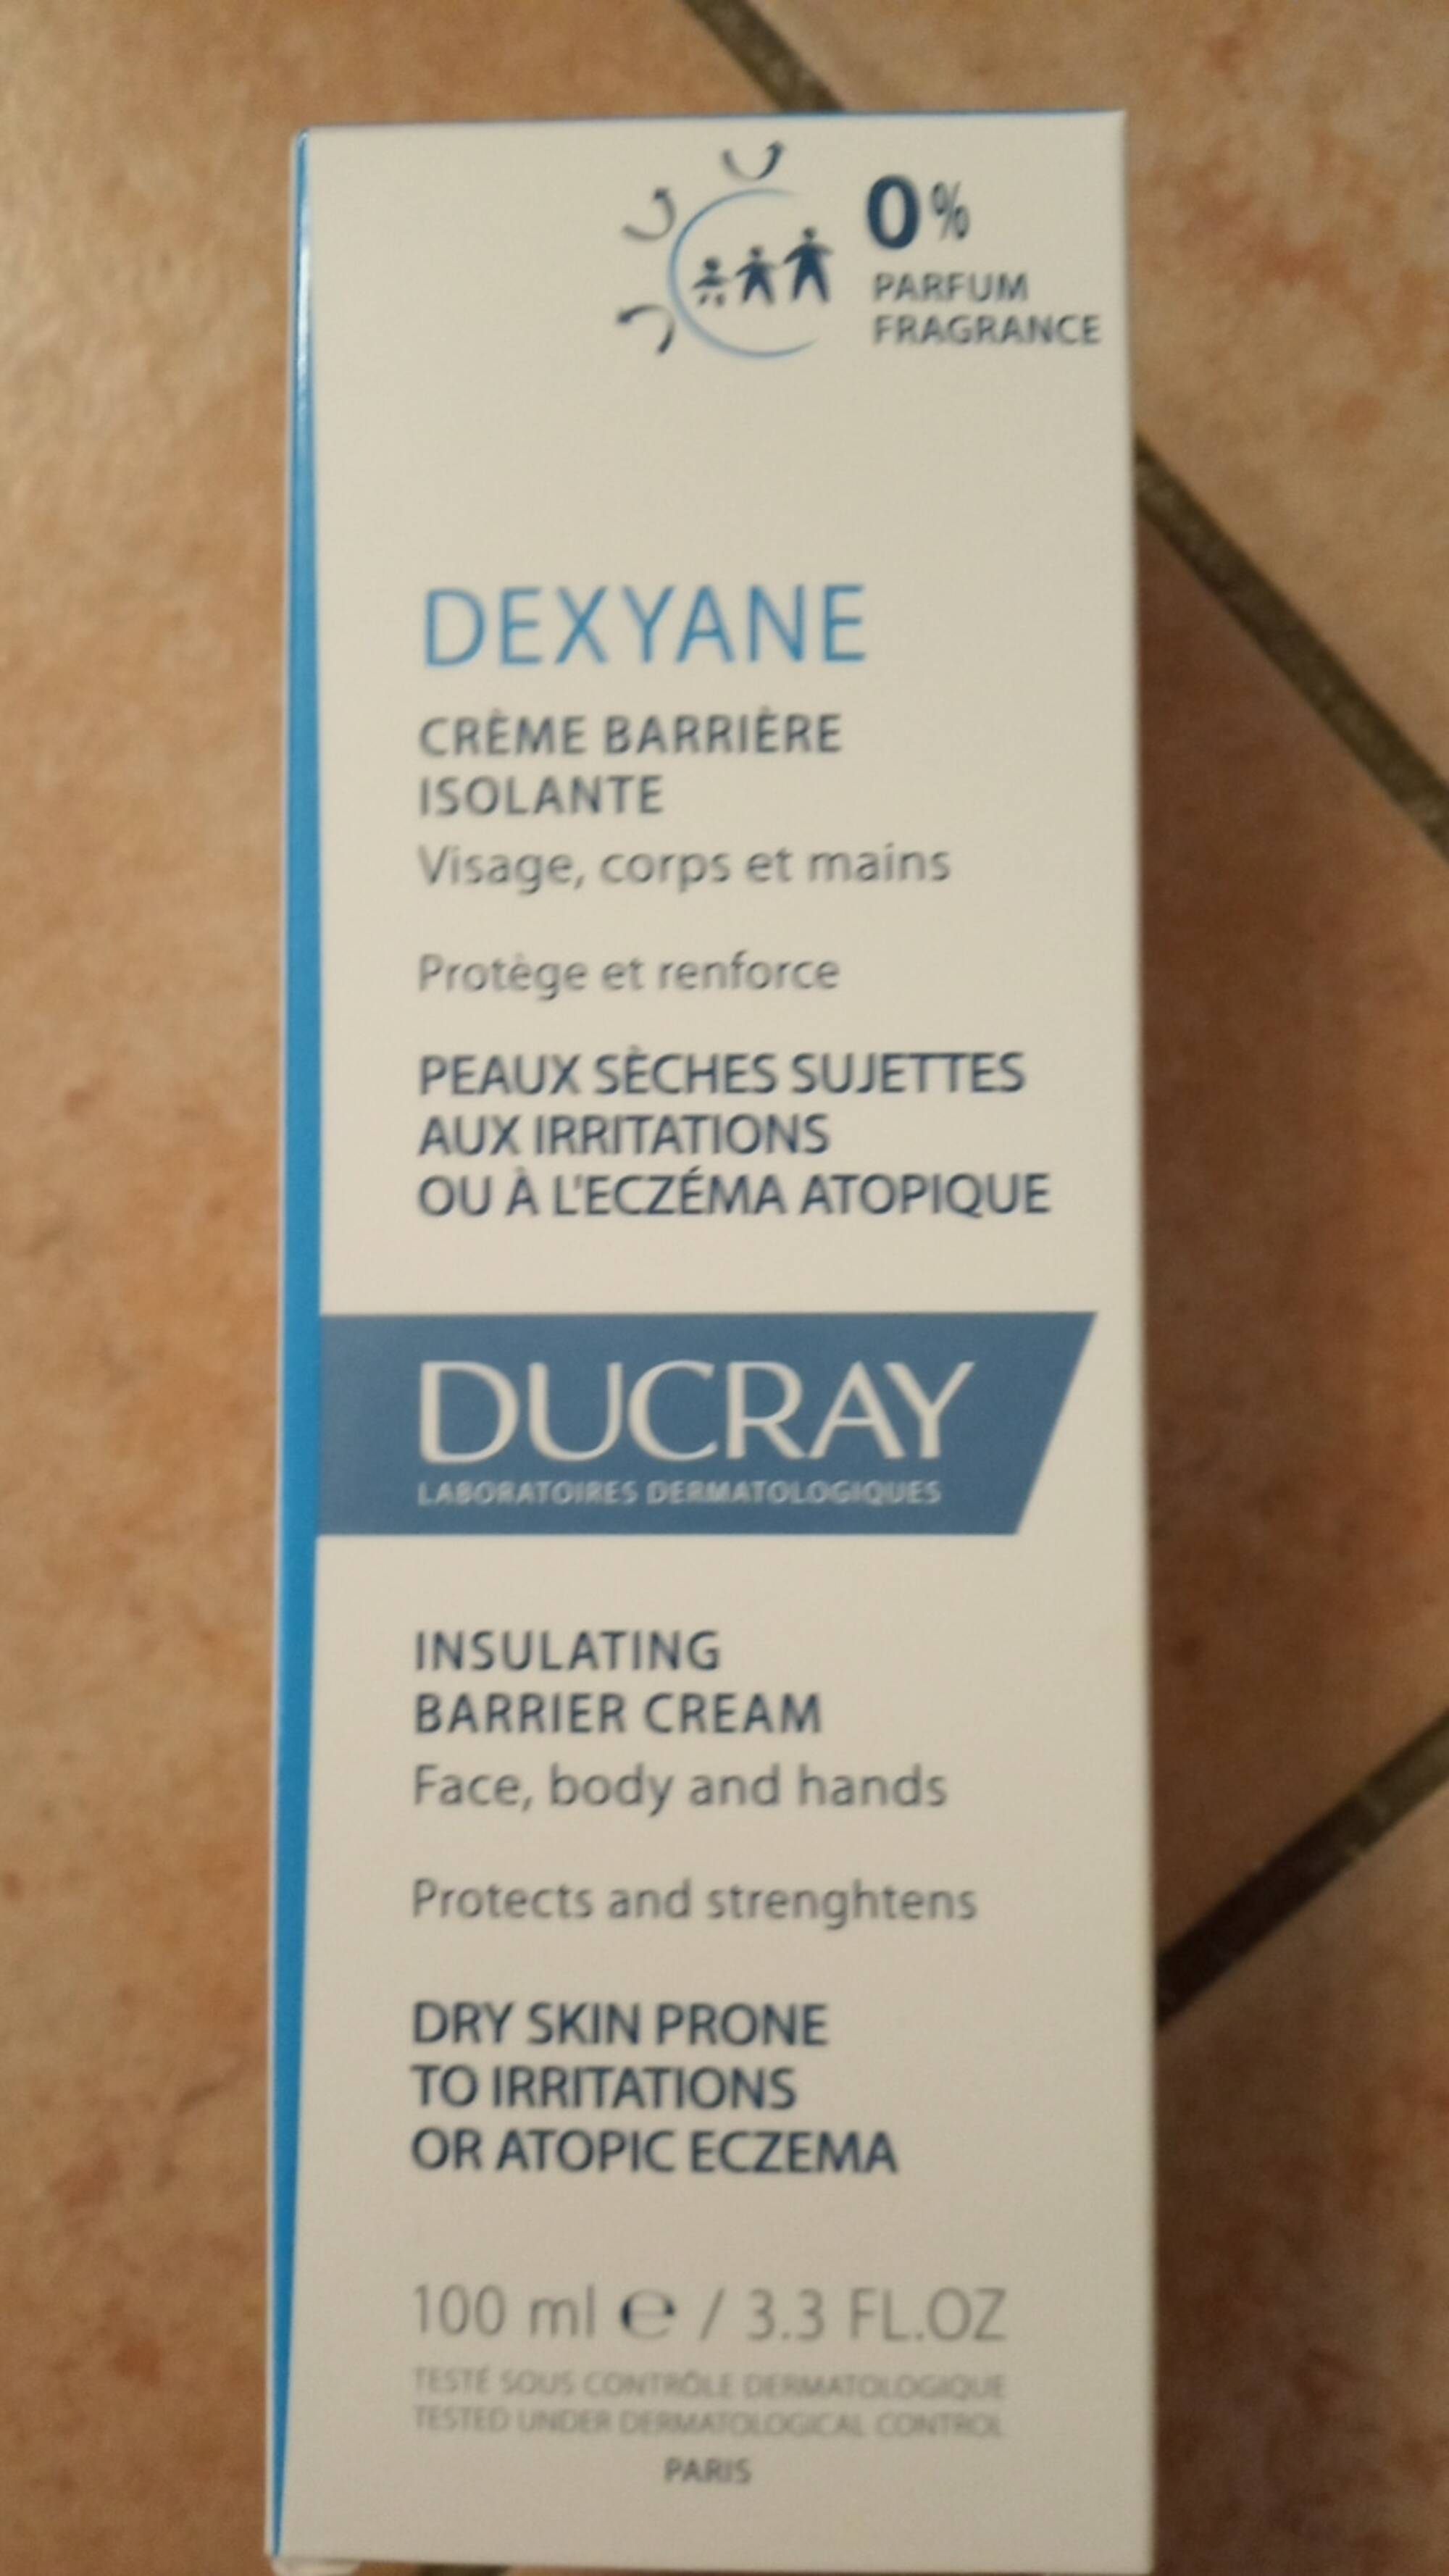 DUCRAY - Dexyane - Crème barrière isolante